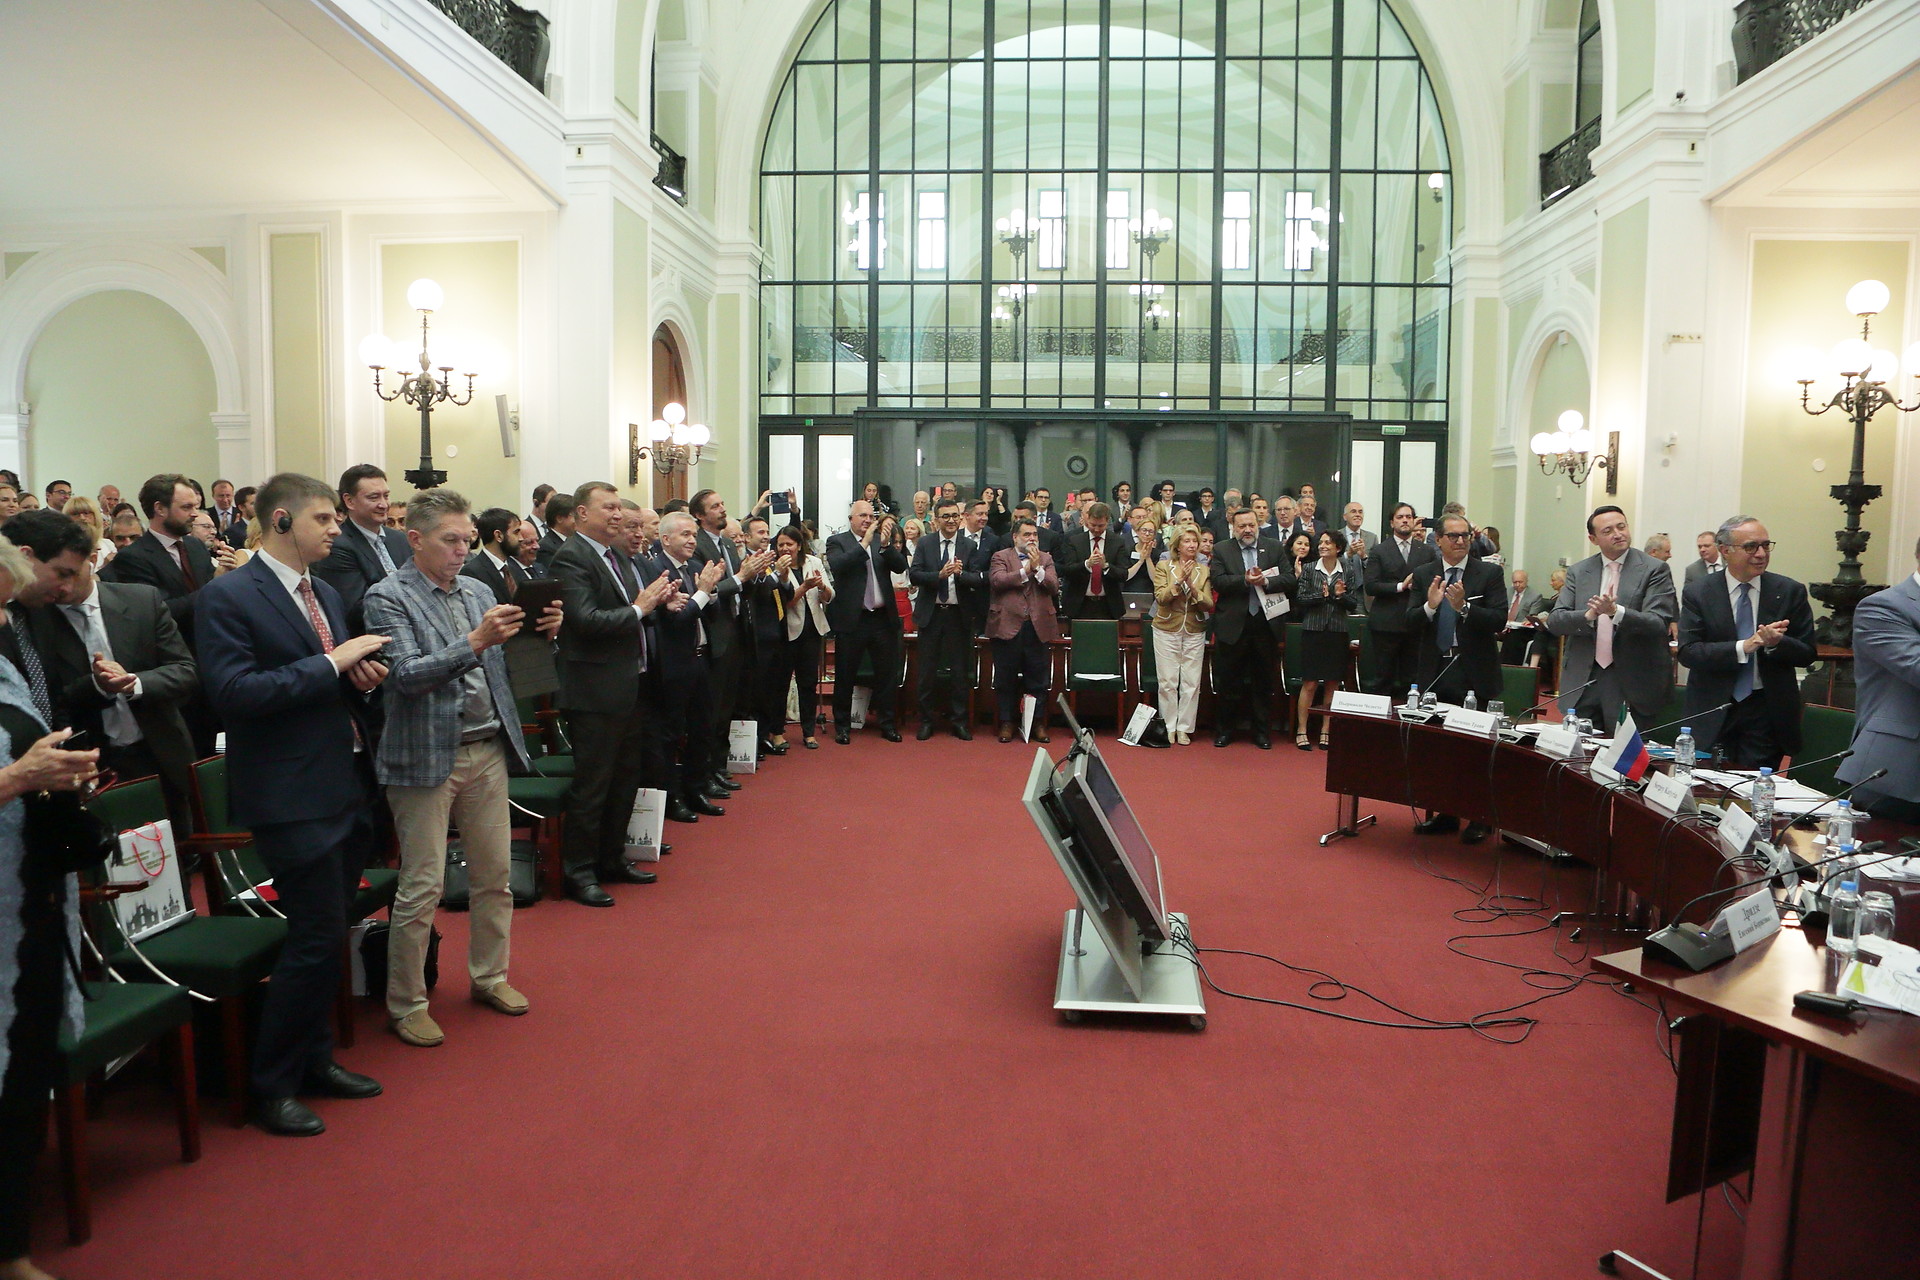 Applausi e standing ovation per salutare l'ex presidente della CCIR Rosario Alessandrello, che passa il testimone al neoeletto Vincenzo Trani